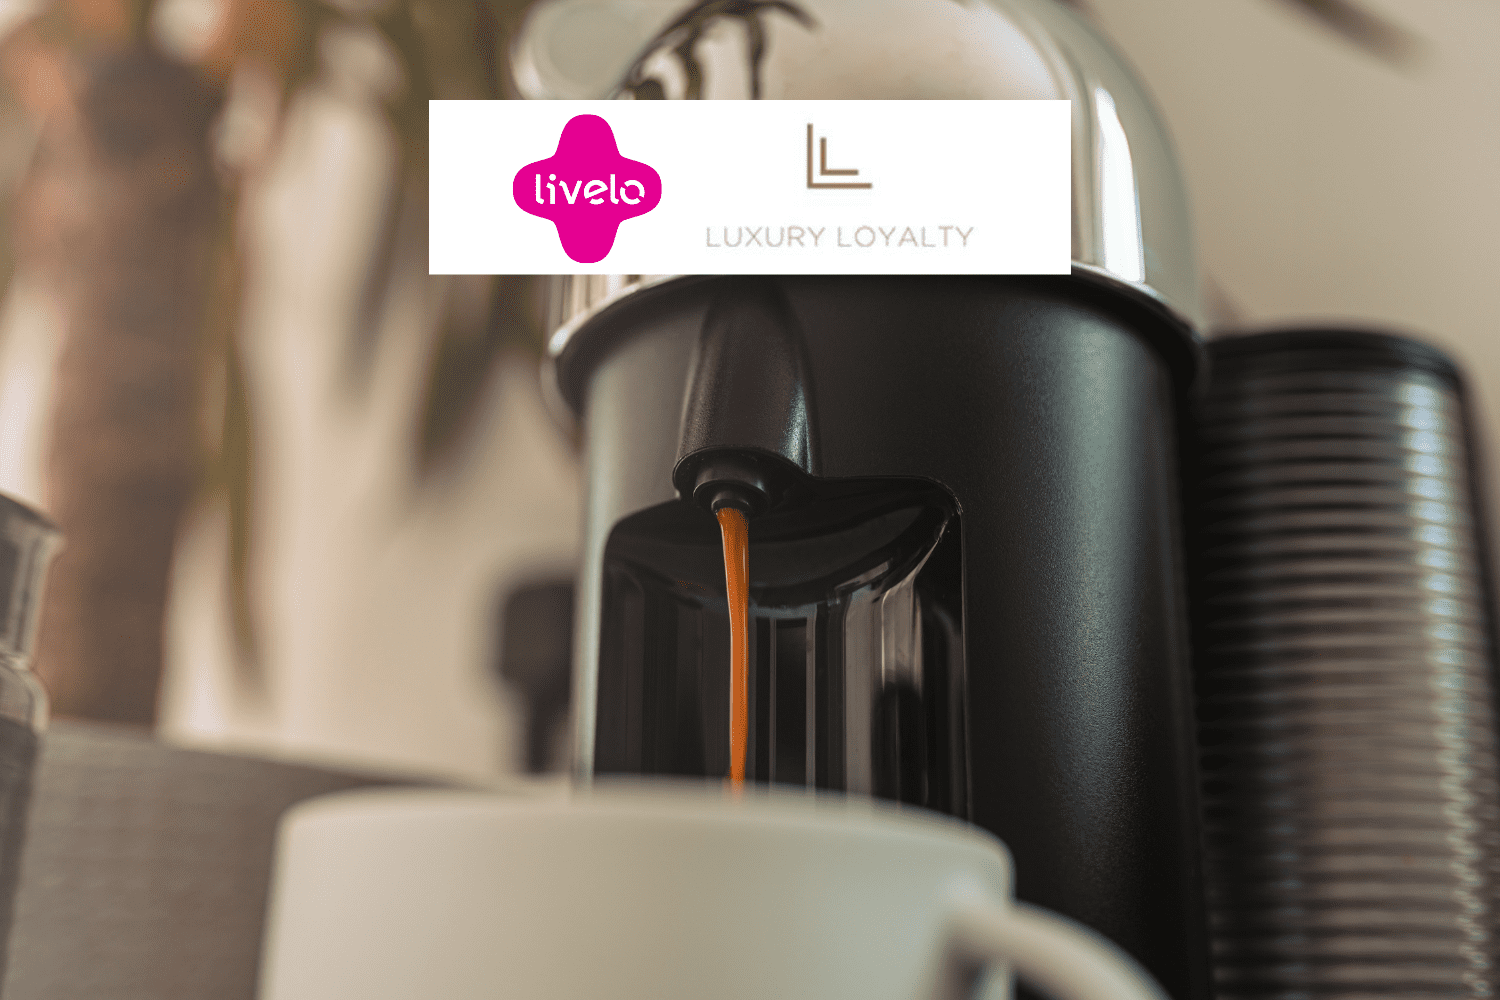 máquina de café com logo Livelo e Luxury Loyalty até 12 pontos Livelo